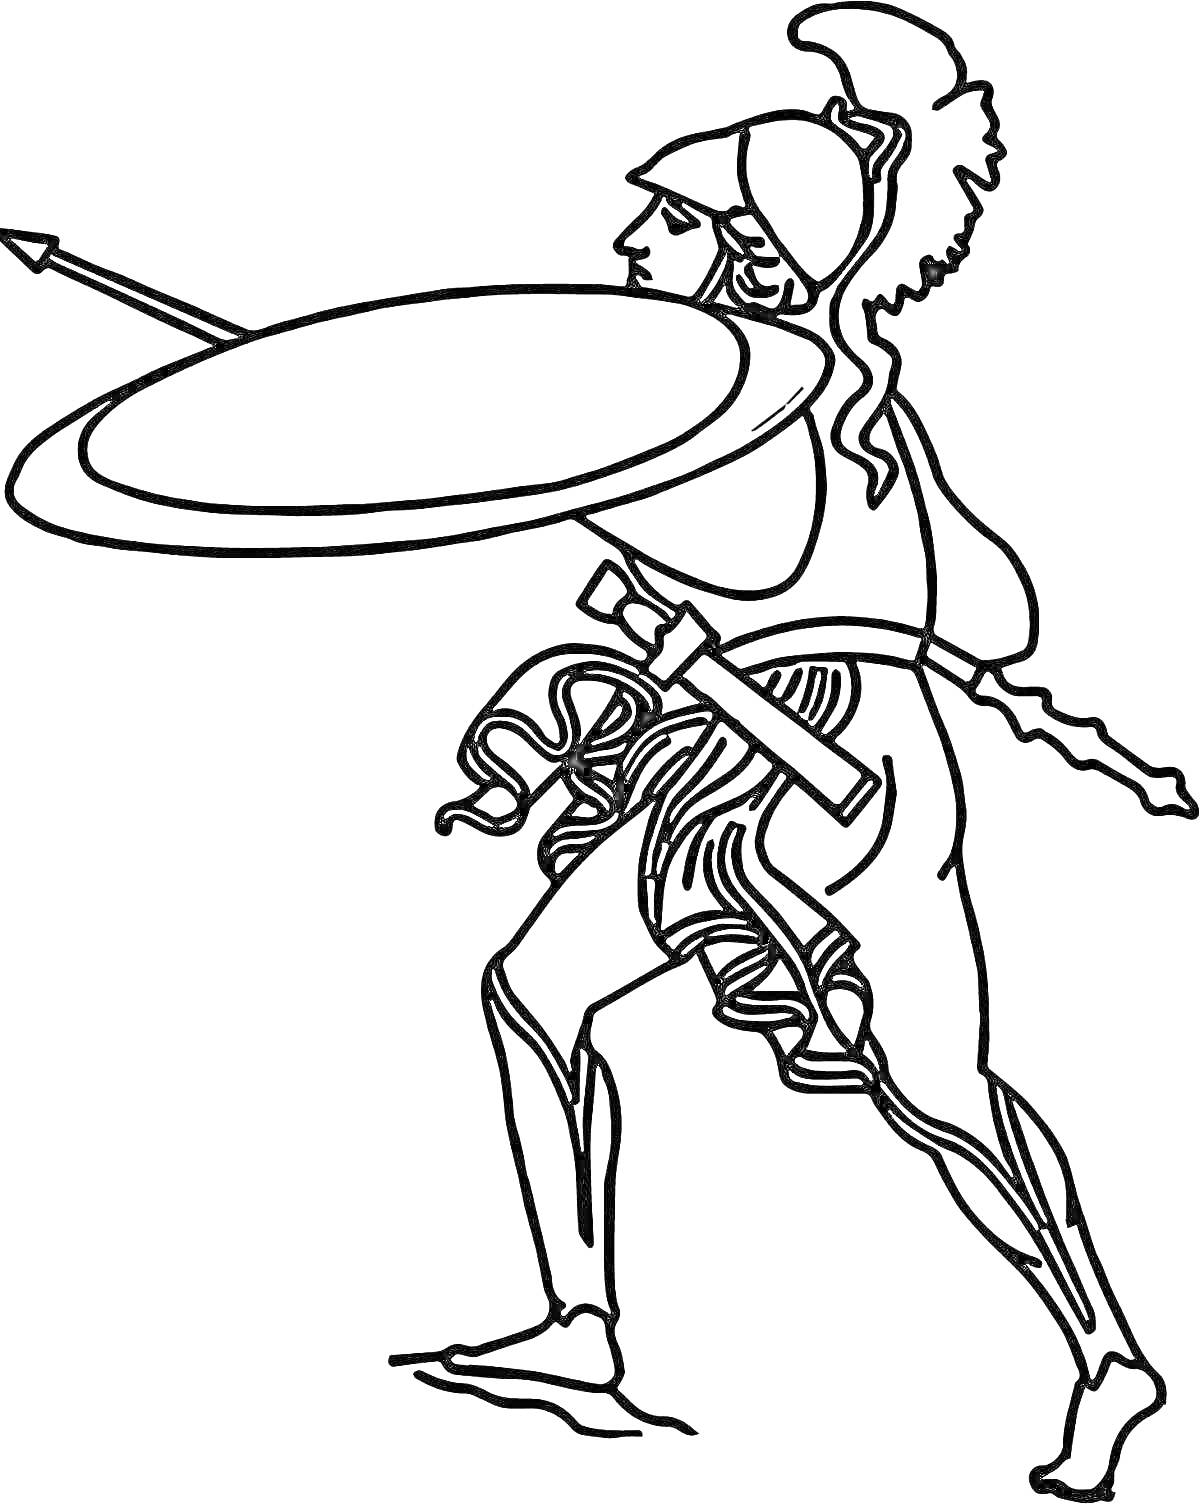 Раскраска Гладиатор с копьем и щитом в боевой позе